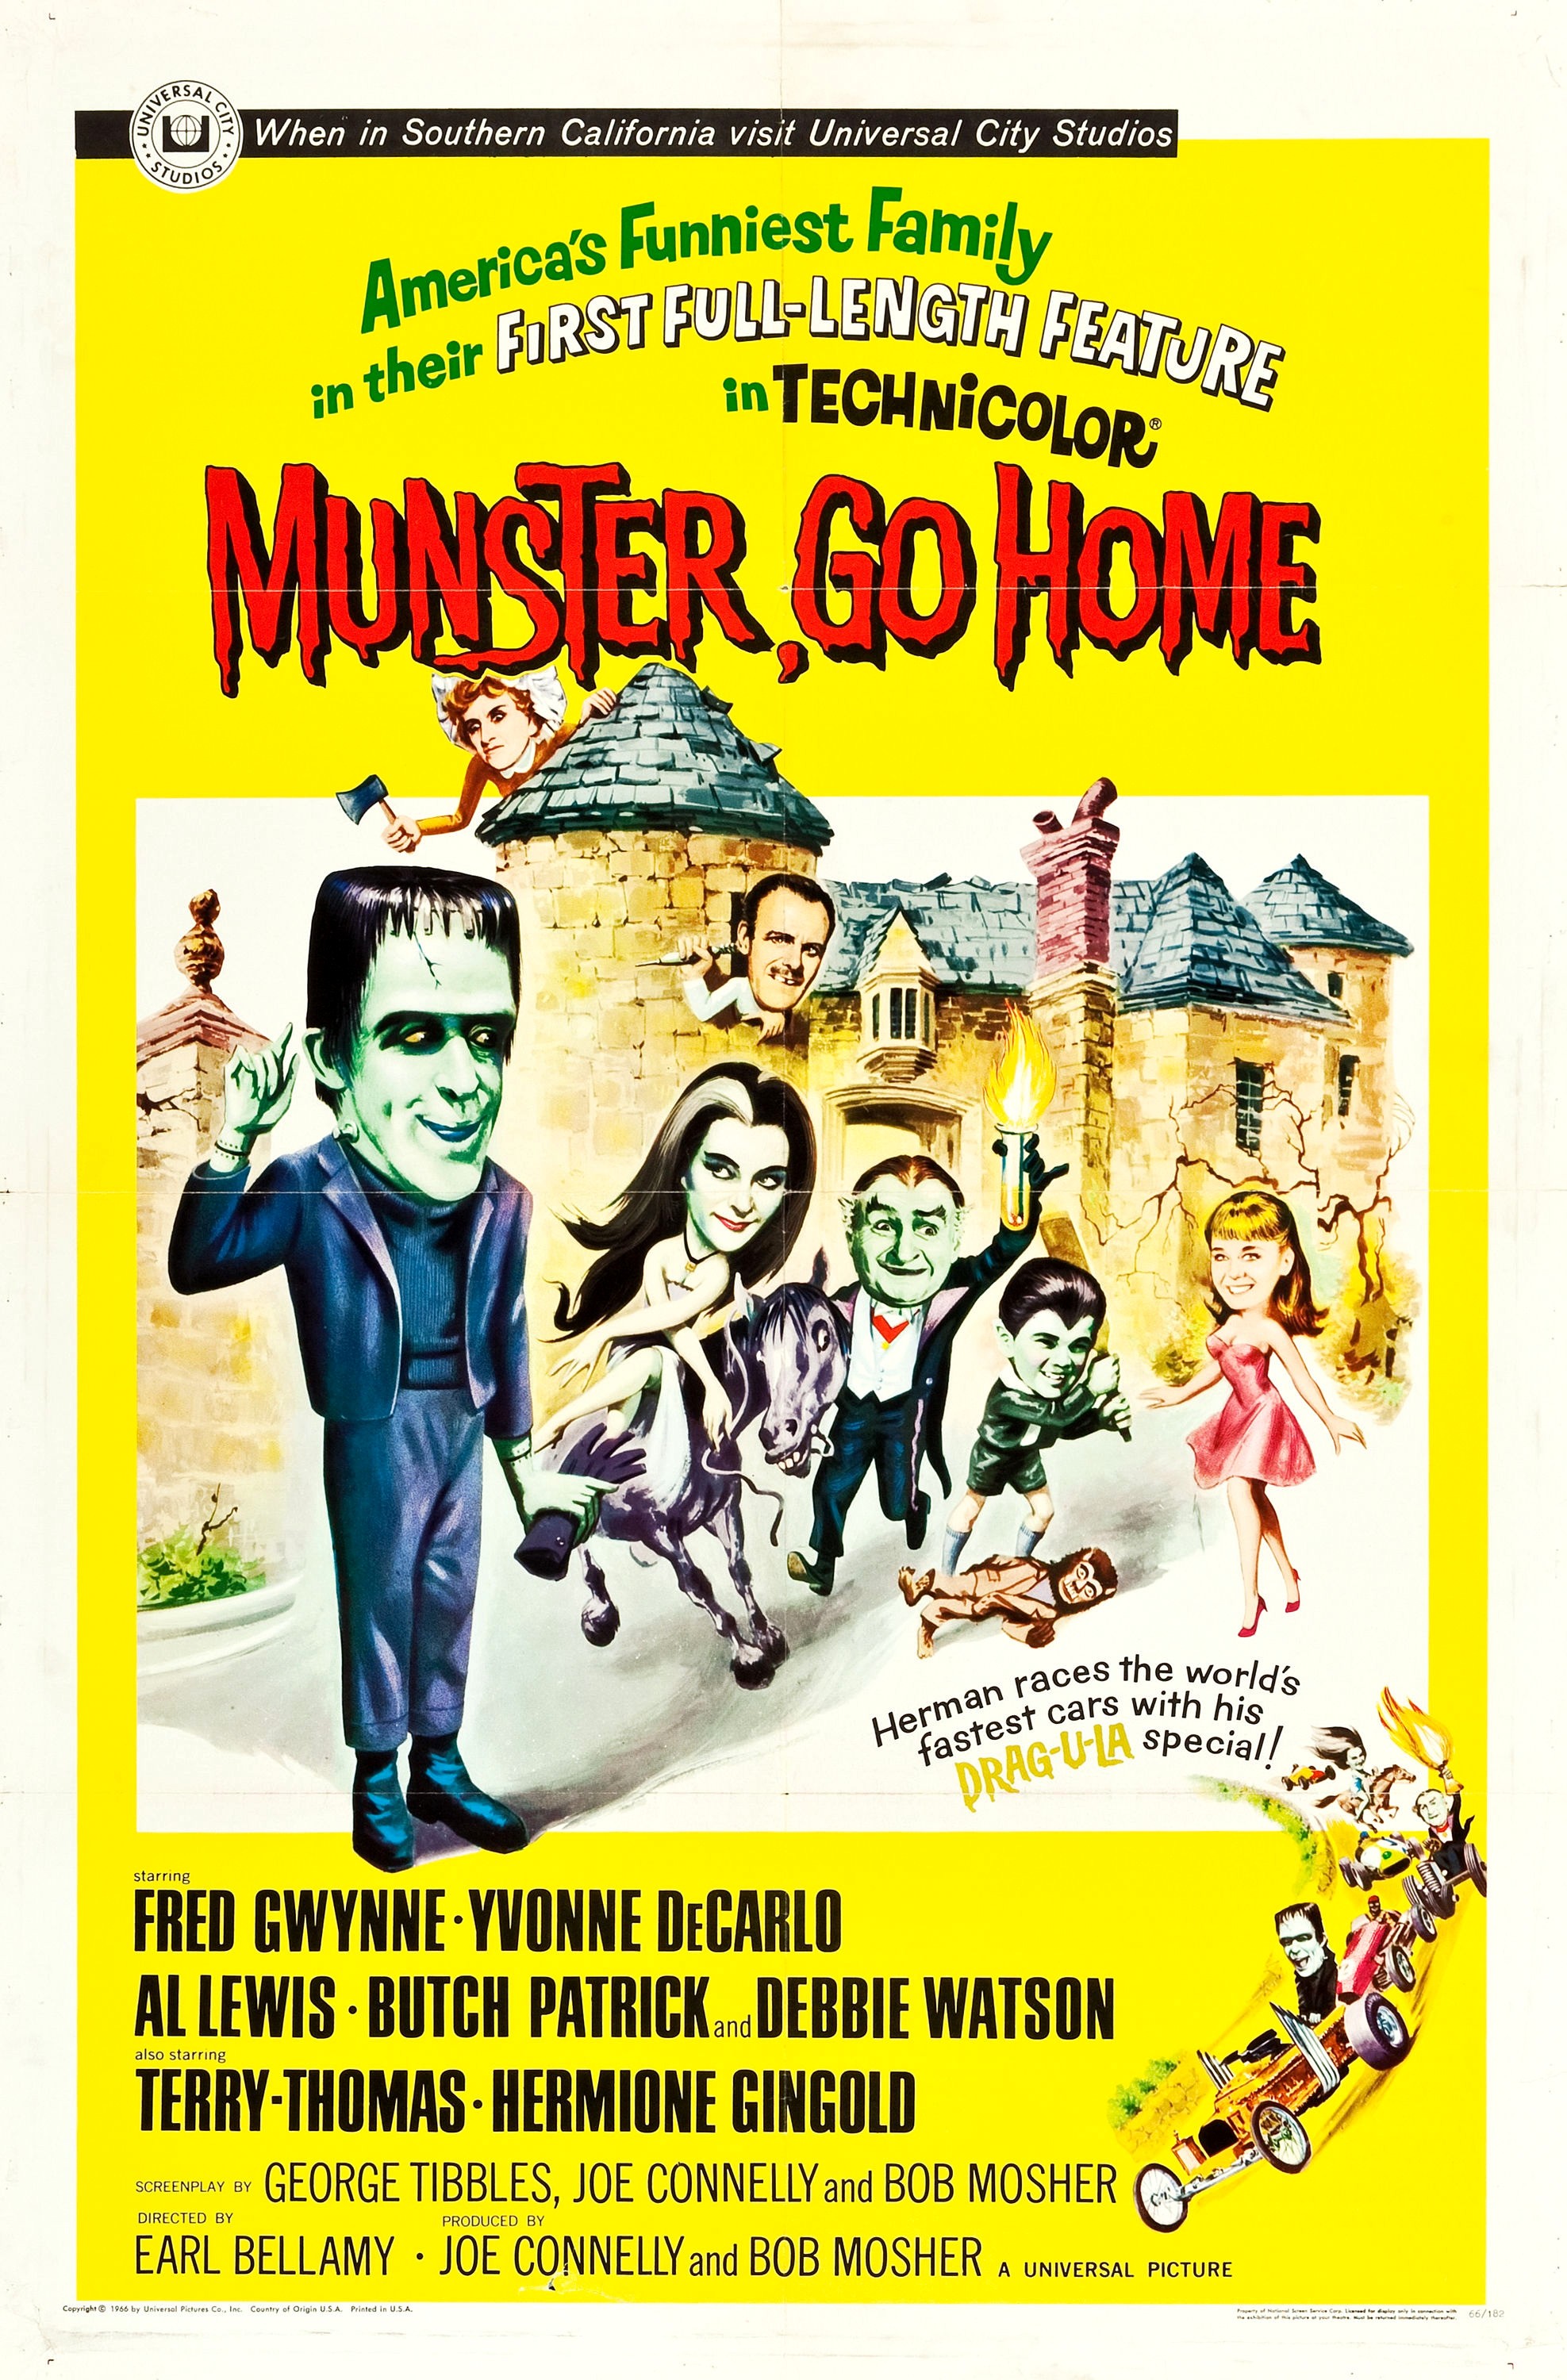 Mega Sized Movie Poster Image for Munster, Go Home! 